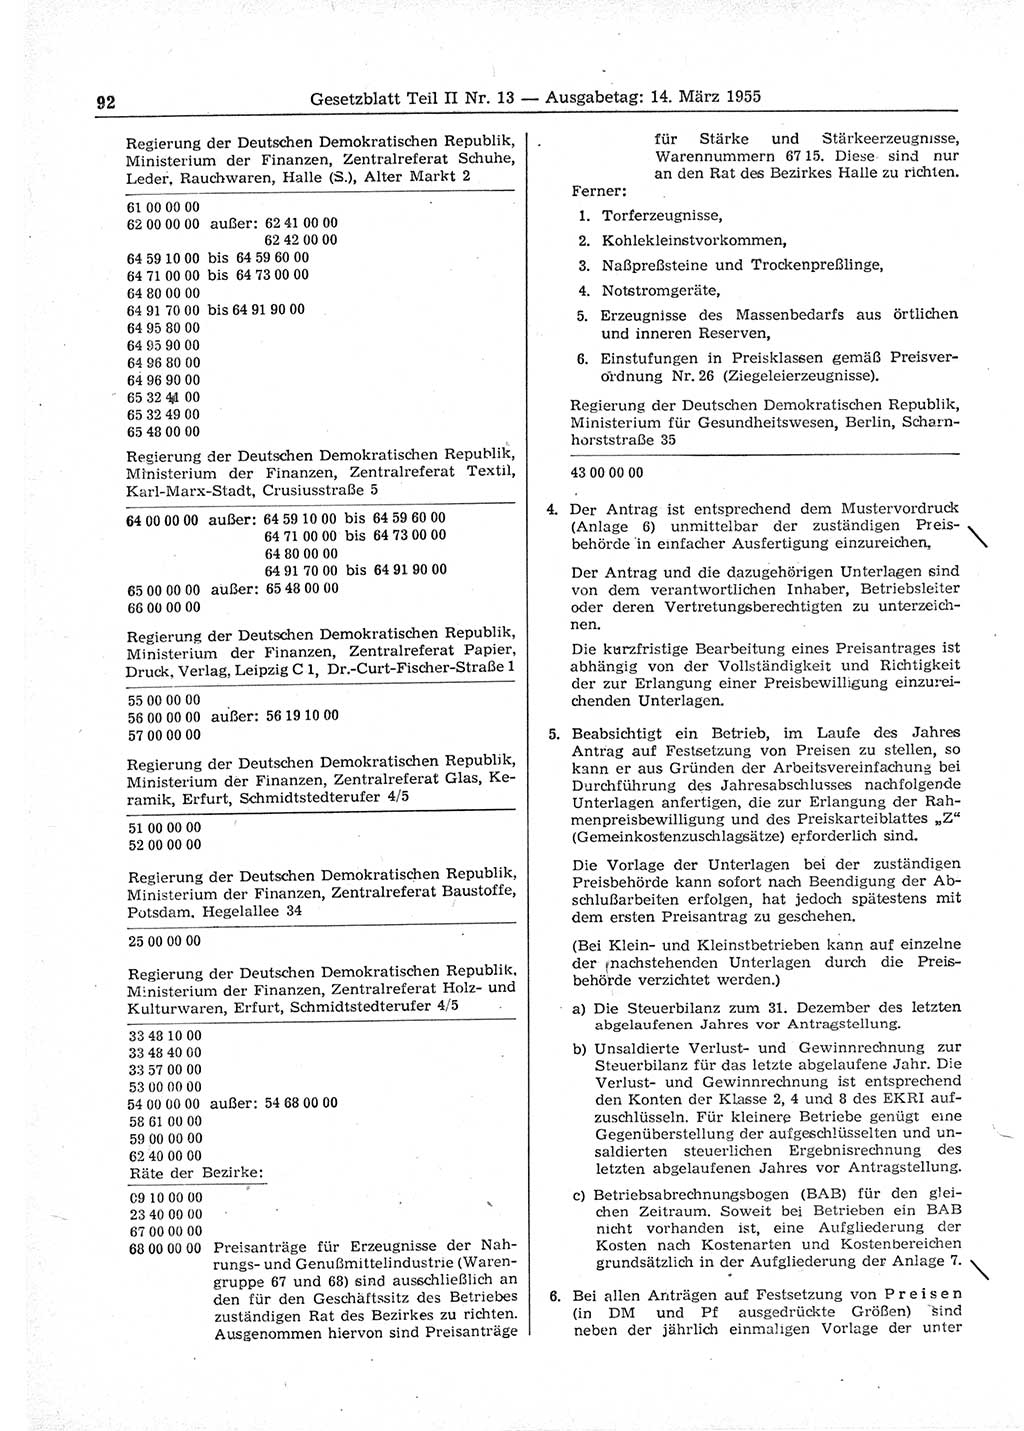 Gesetzblatt (GBl.) der Deutschen Demokratischen Republik (DDR) Teil ⅠⅠ 1955, Seite 92 (GBl. DDR ⅠⅠ 1955, S. 92)